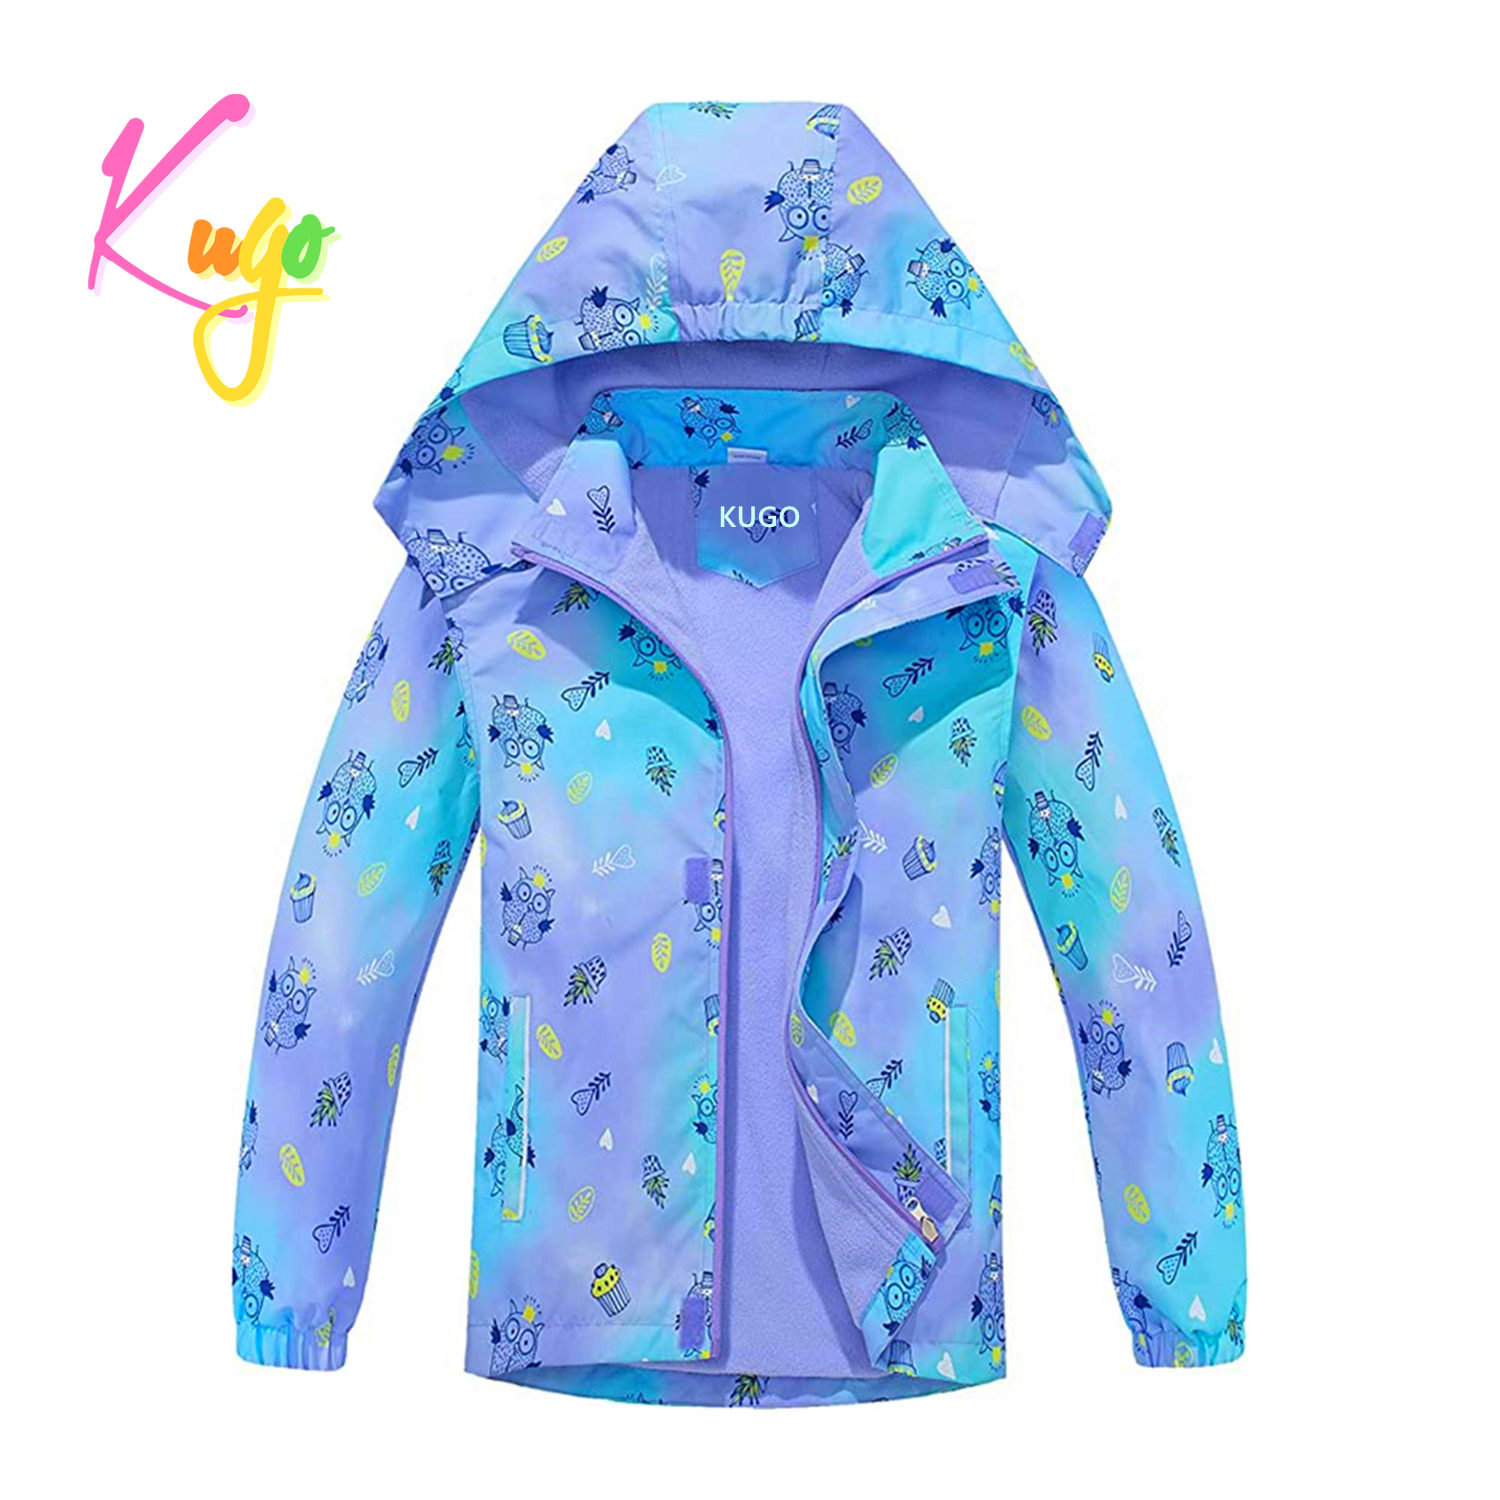 Dívčí jarní, podzimní bunda - KUGO B2850, fialková Barva: Fialková, Velikost: 98